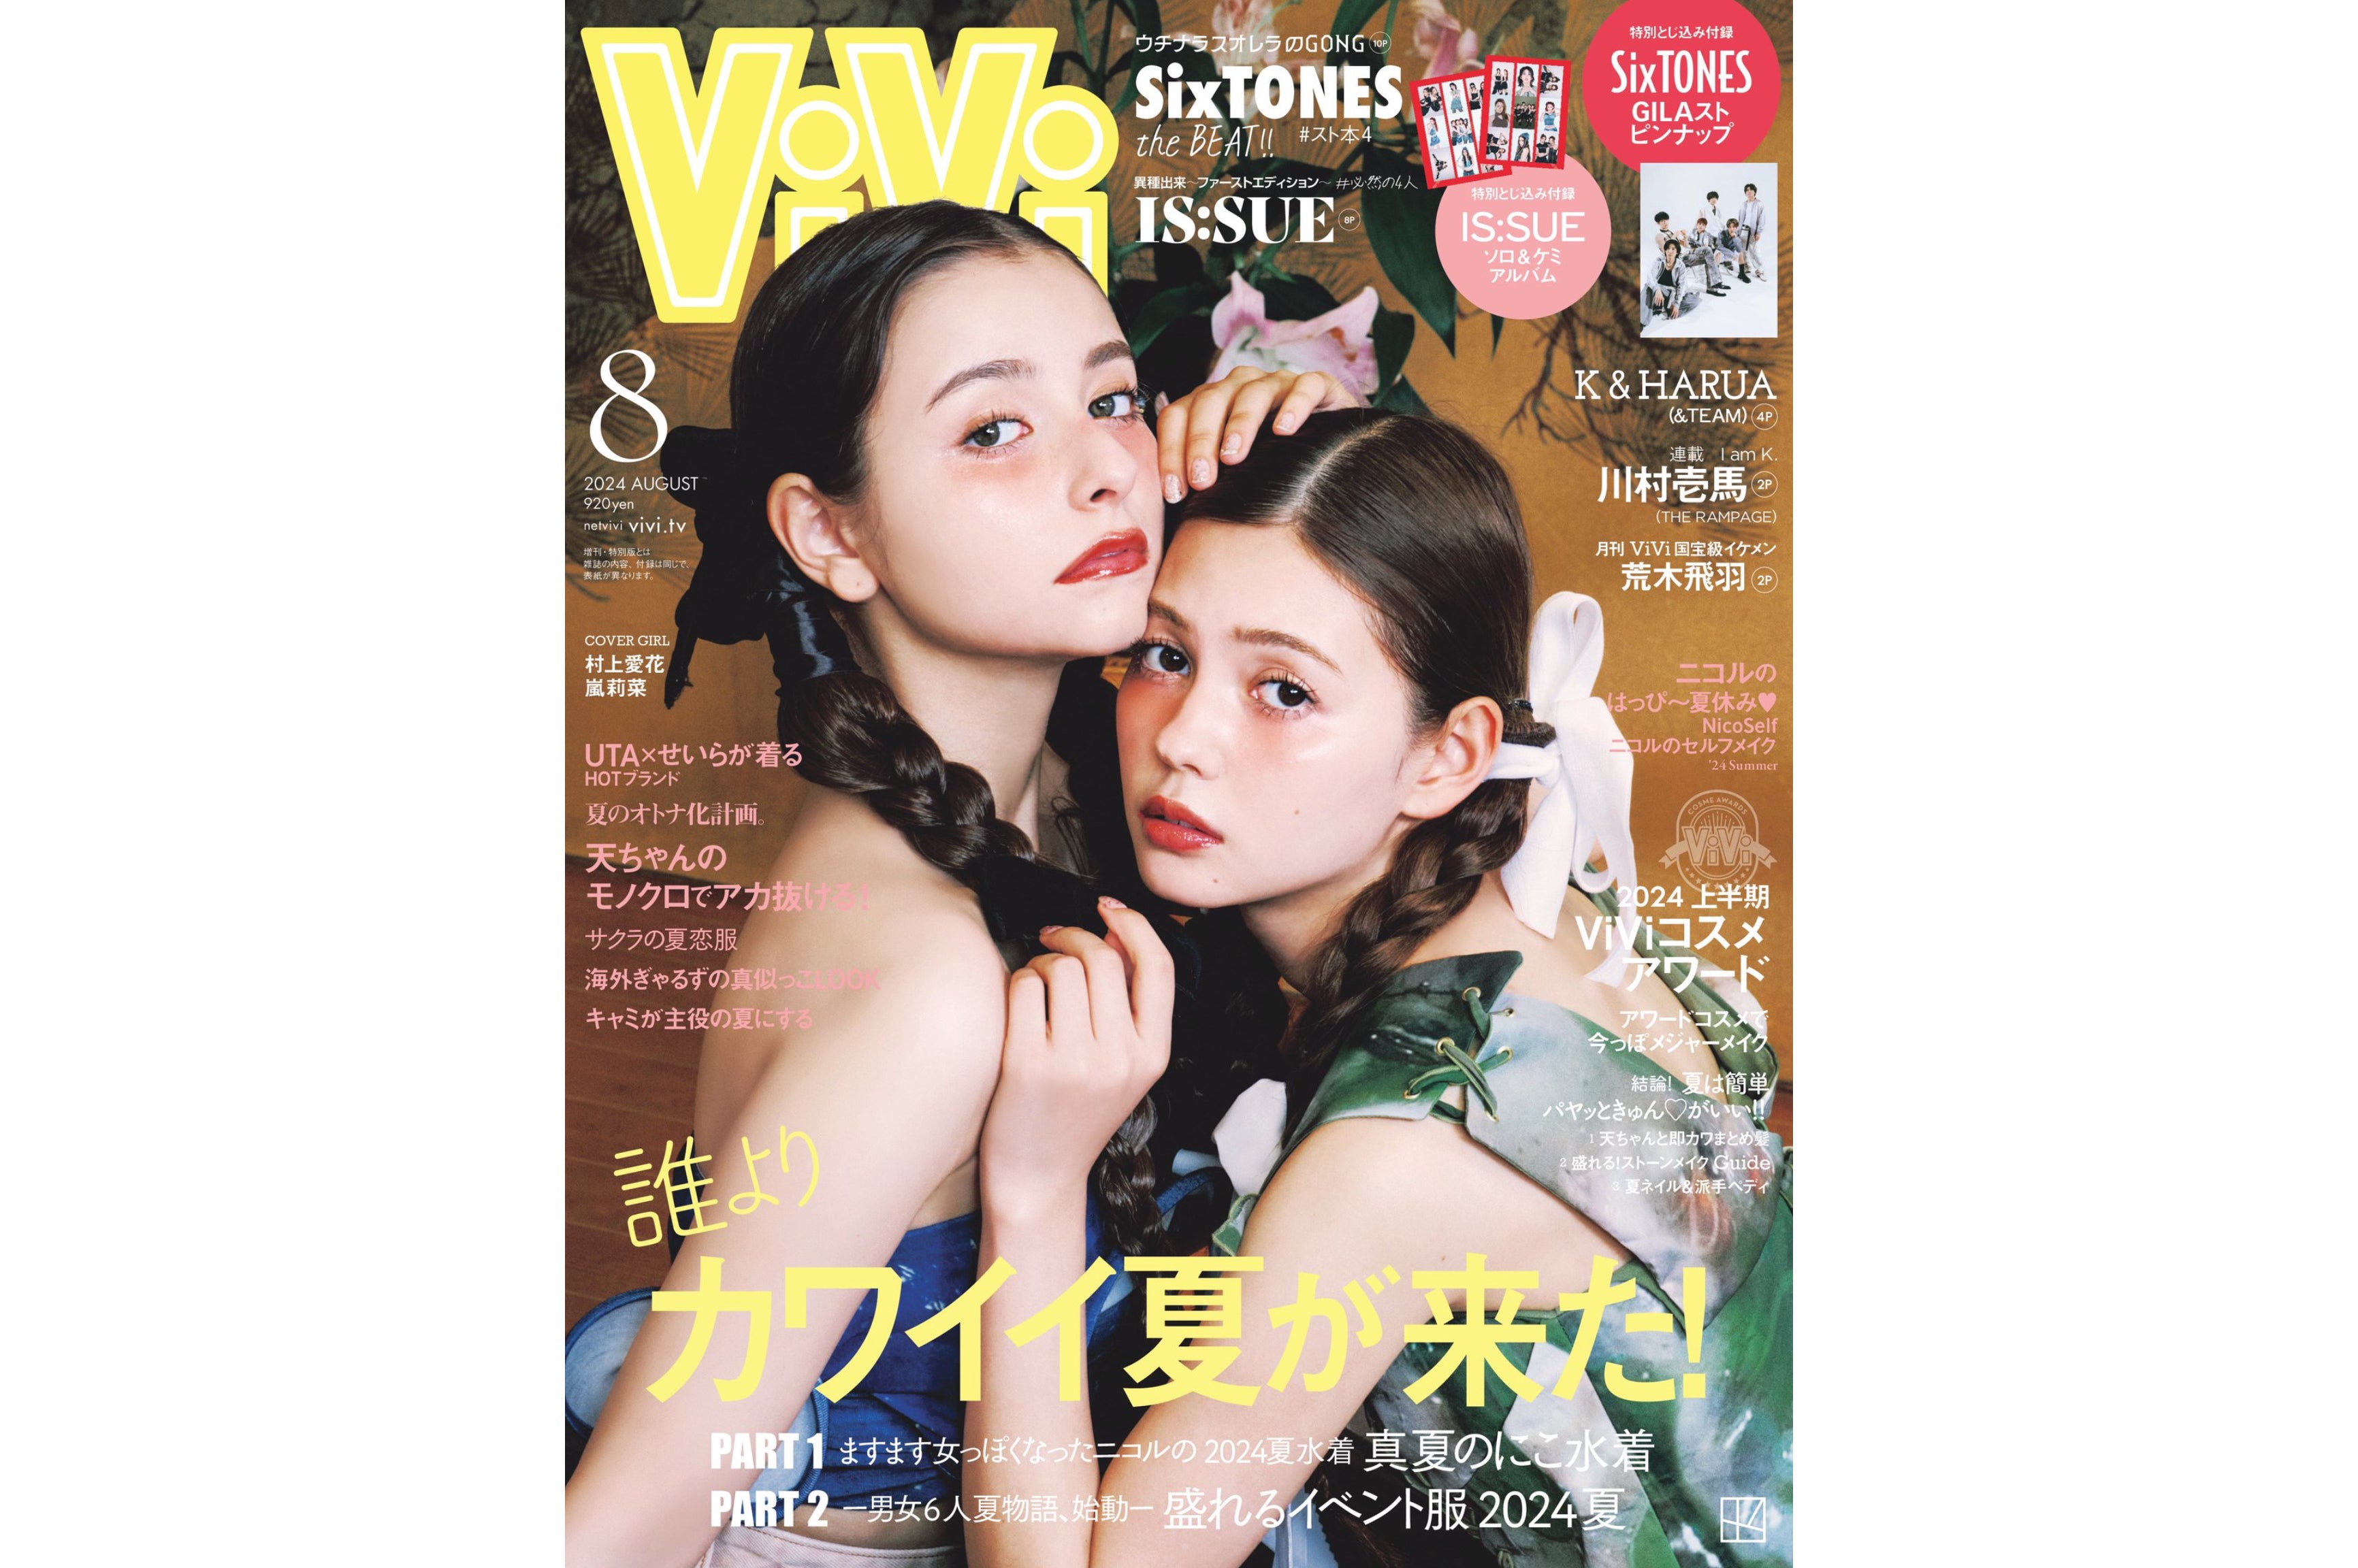 【媒体掲載】ViVi 8月号 6/23(日)発売